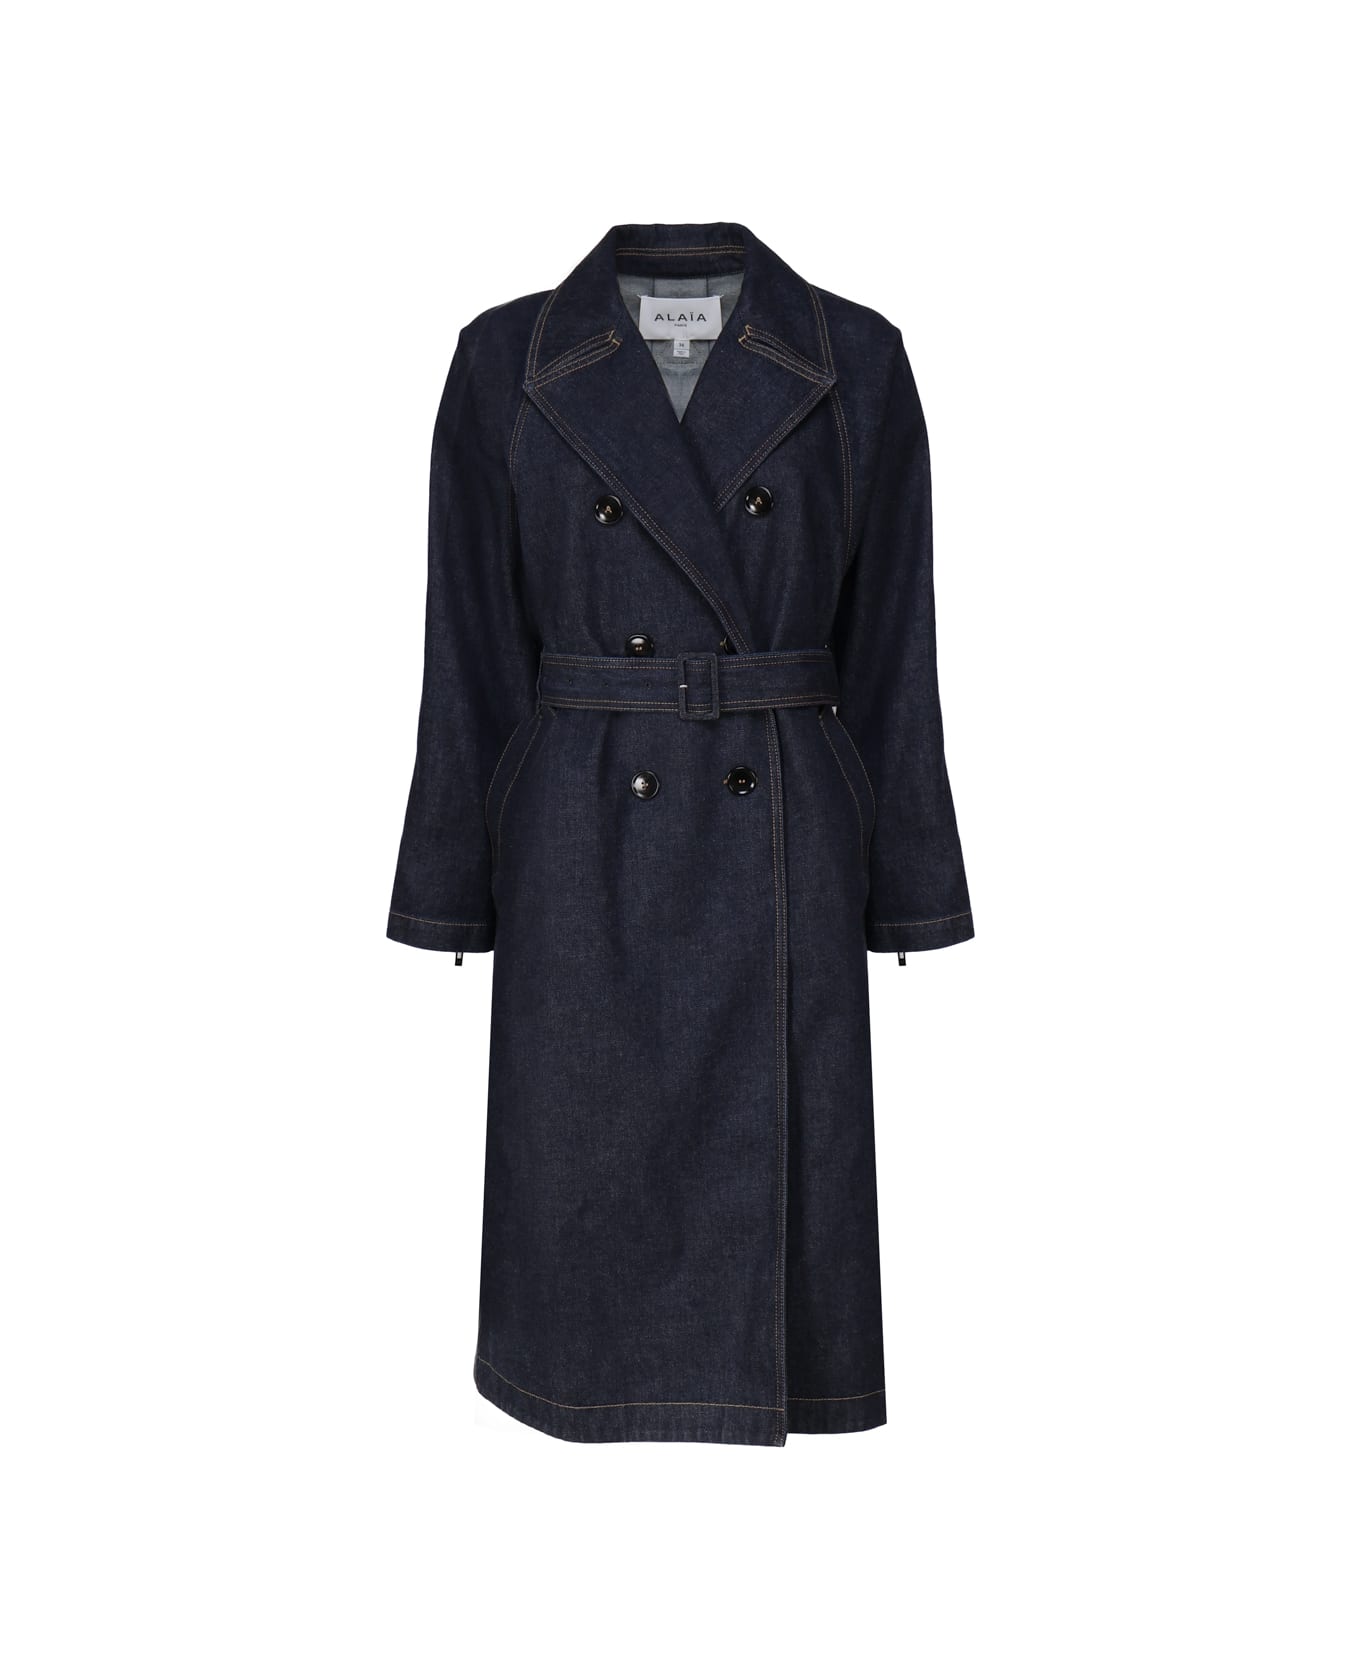 Alaia Classic Coat In Cotton Denim - DENIM BLUE